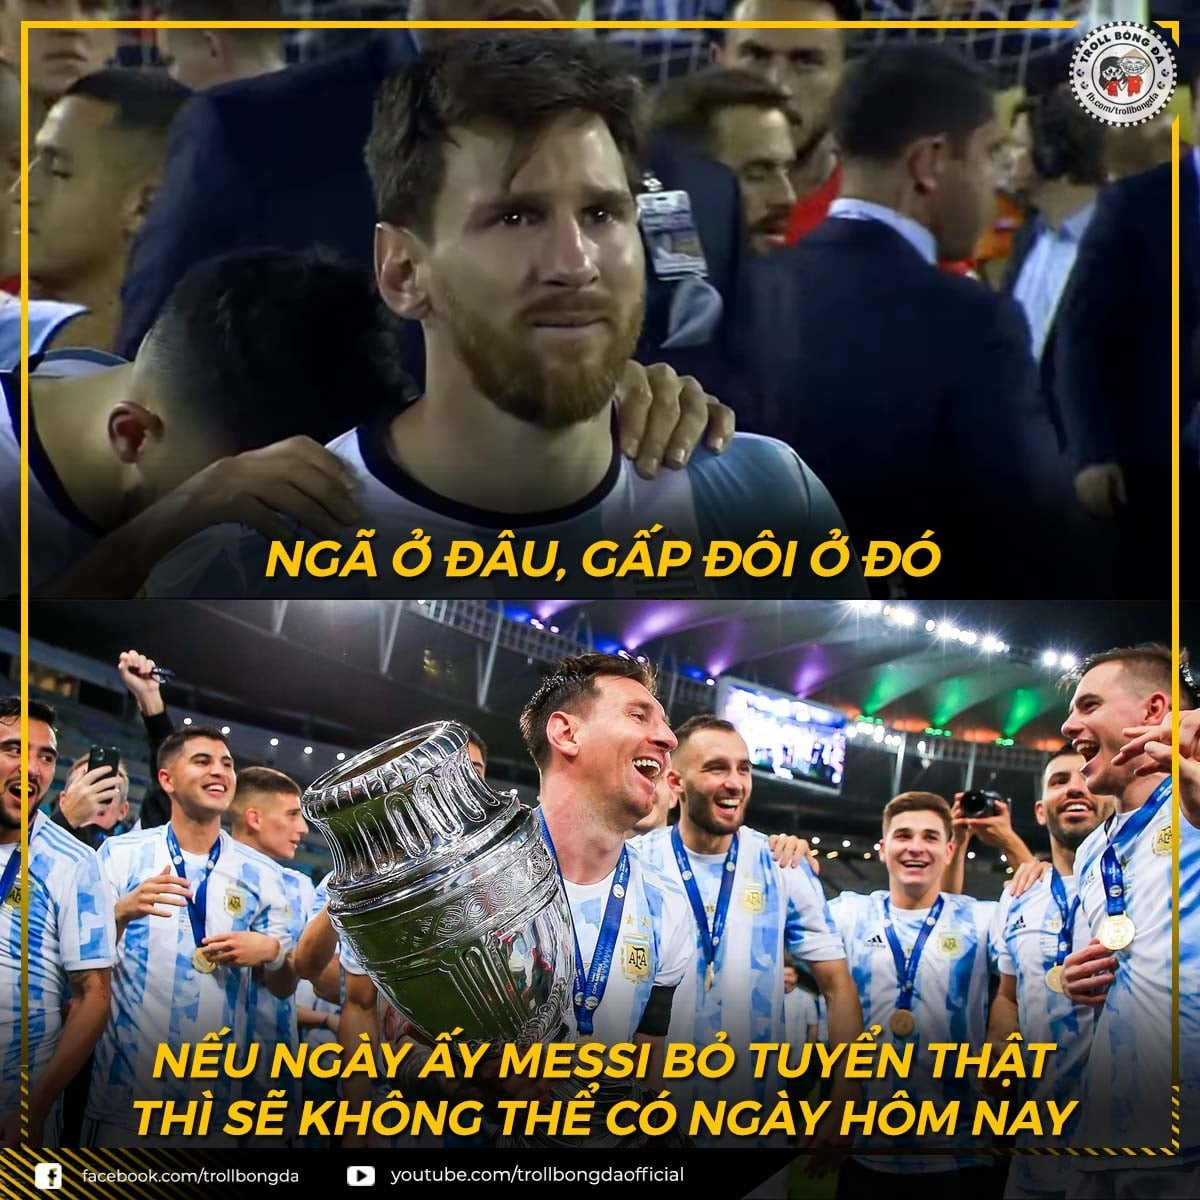 Messi sẽ không có ngày hôm nay nếu thực sự giã từ ĐT Argentina sau năm 2016. (Ảnh: Troll bóng đá). 